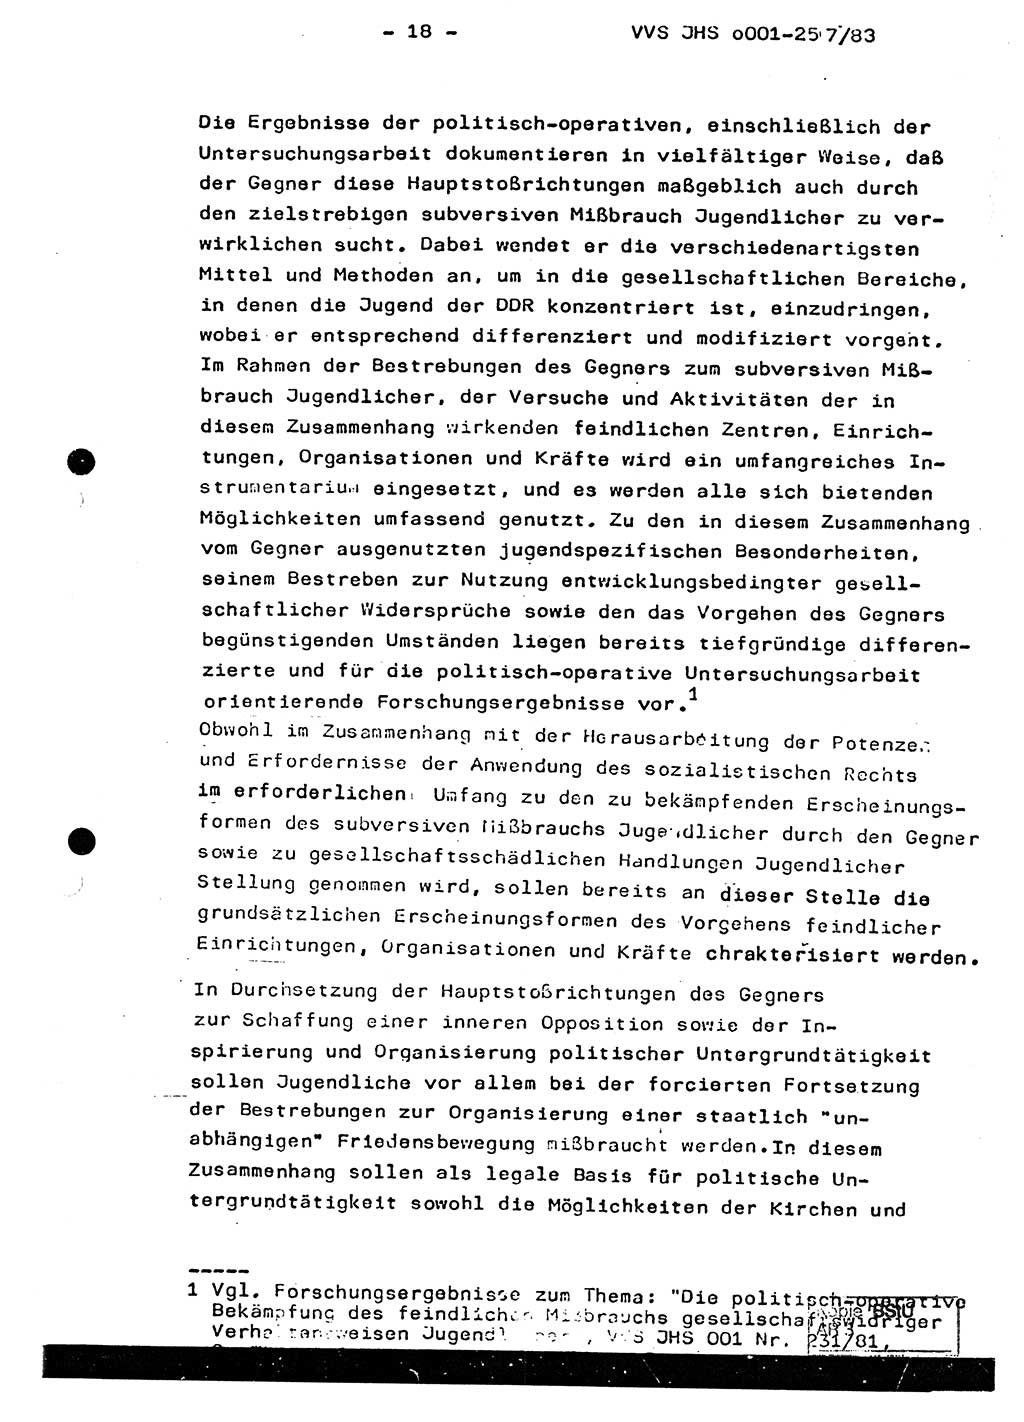 Dissertation, Oberst Helmut Lubas (BV Mdg.), Oberstleutnant Manfred Eschberger (HA IX), Oberleutnant Hans-Jürgen Ludwig (JHS), Ministerium für Staatssicherheit (MfS) [Deutsche Demokratische Republik (DDR)], Juristische Hochschule (JHS), Vertrauliche Verschlußsache (VVS) o001-257/83, Potsdam 1983, Seite 18 (Diss. MfS DDR JHS VVS o001-257/83 1983, S. 18)